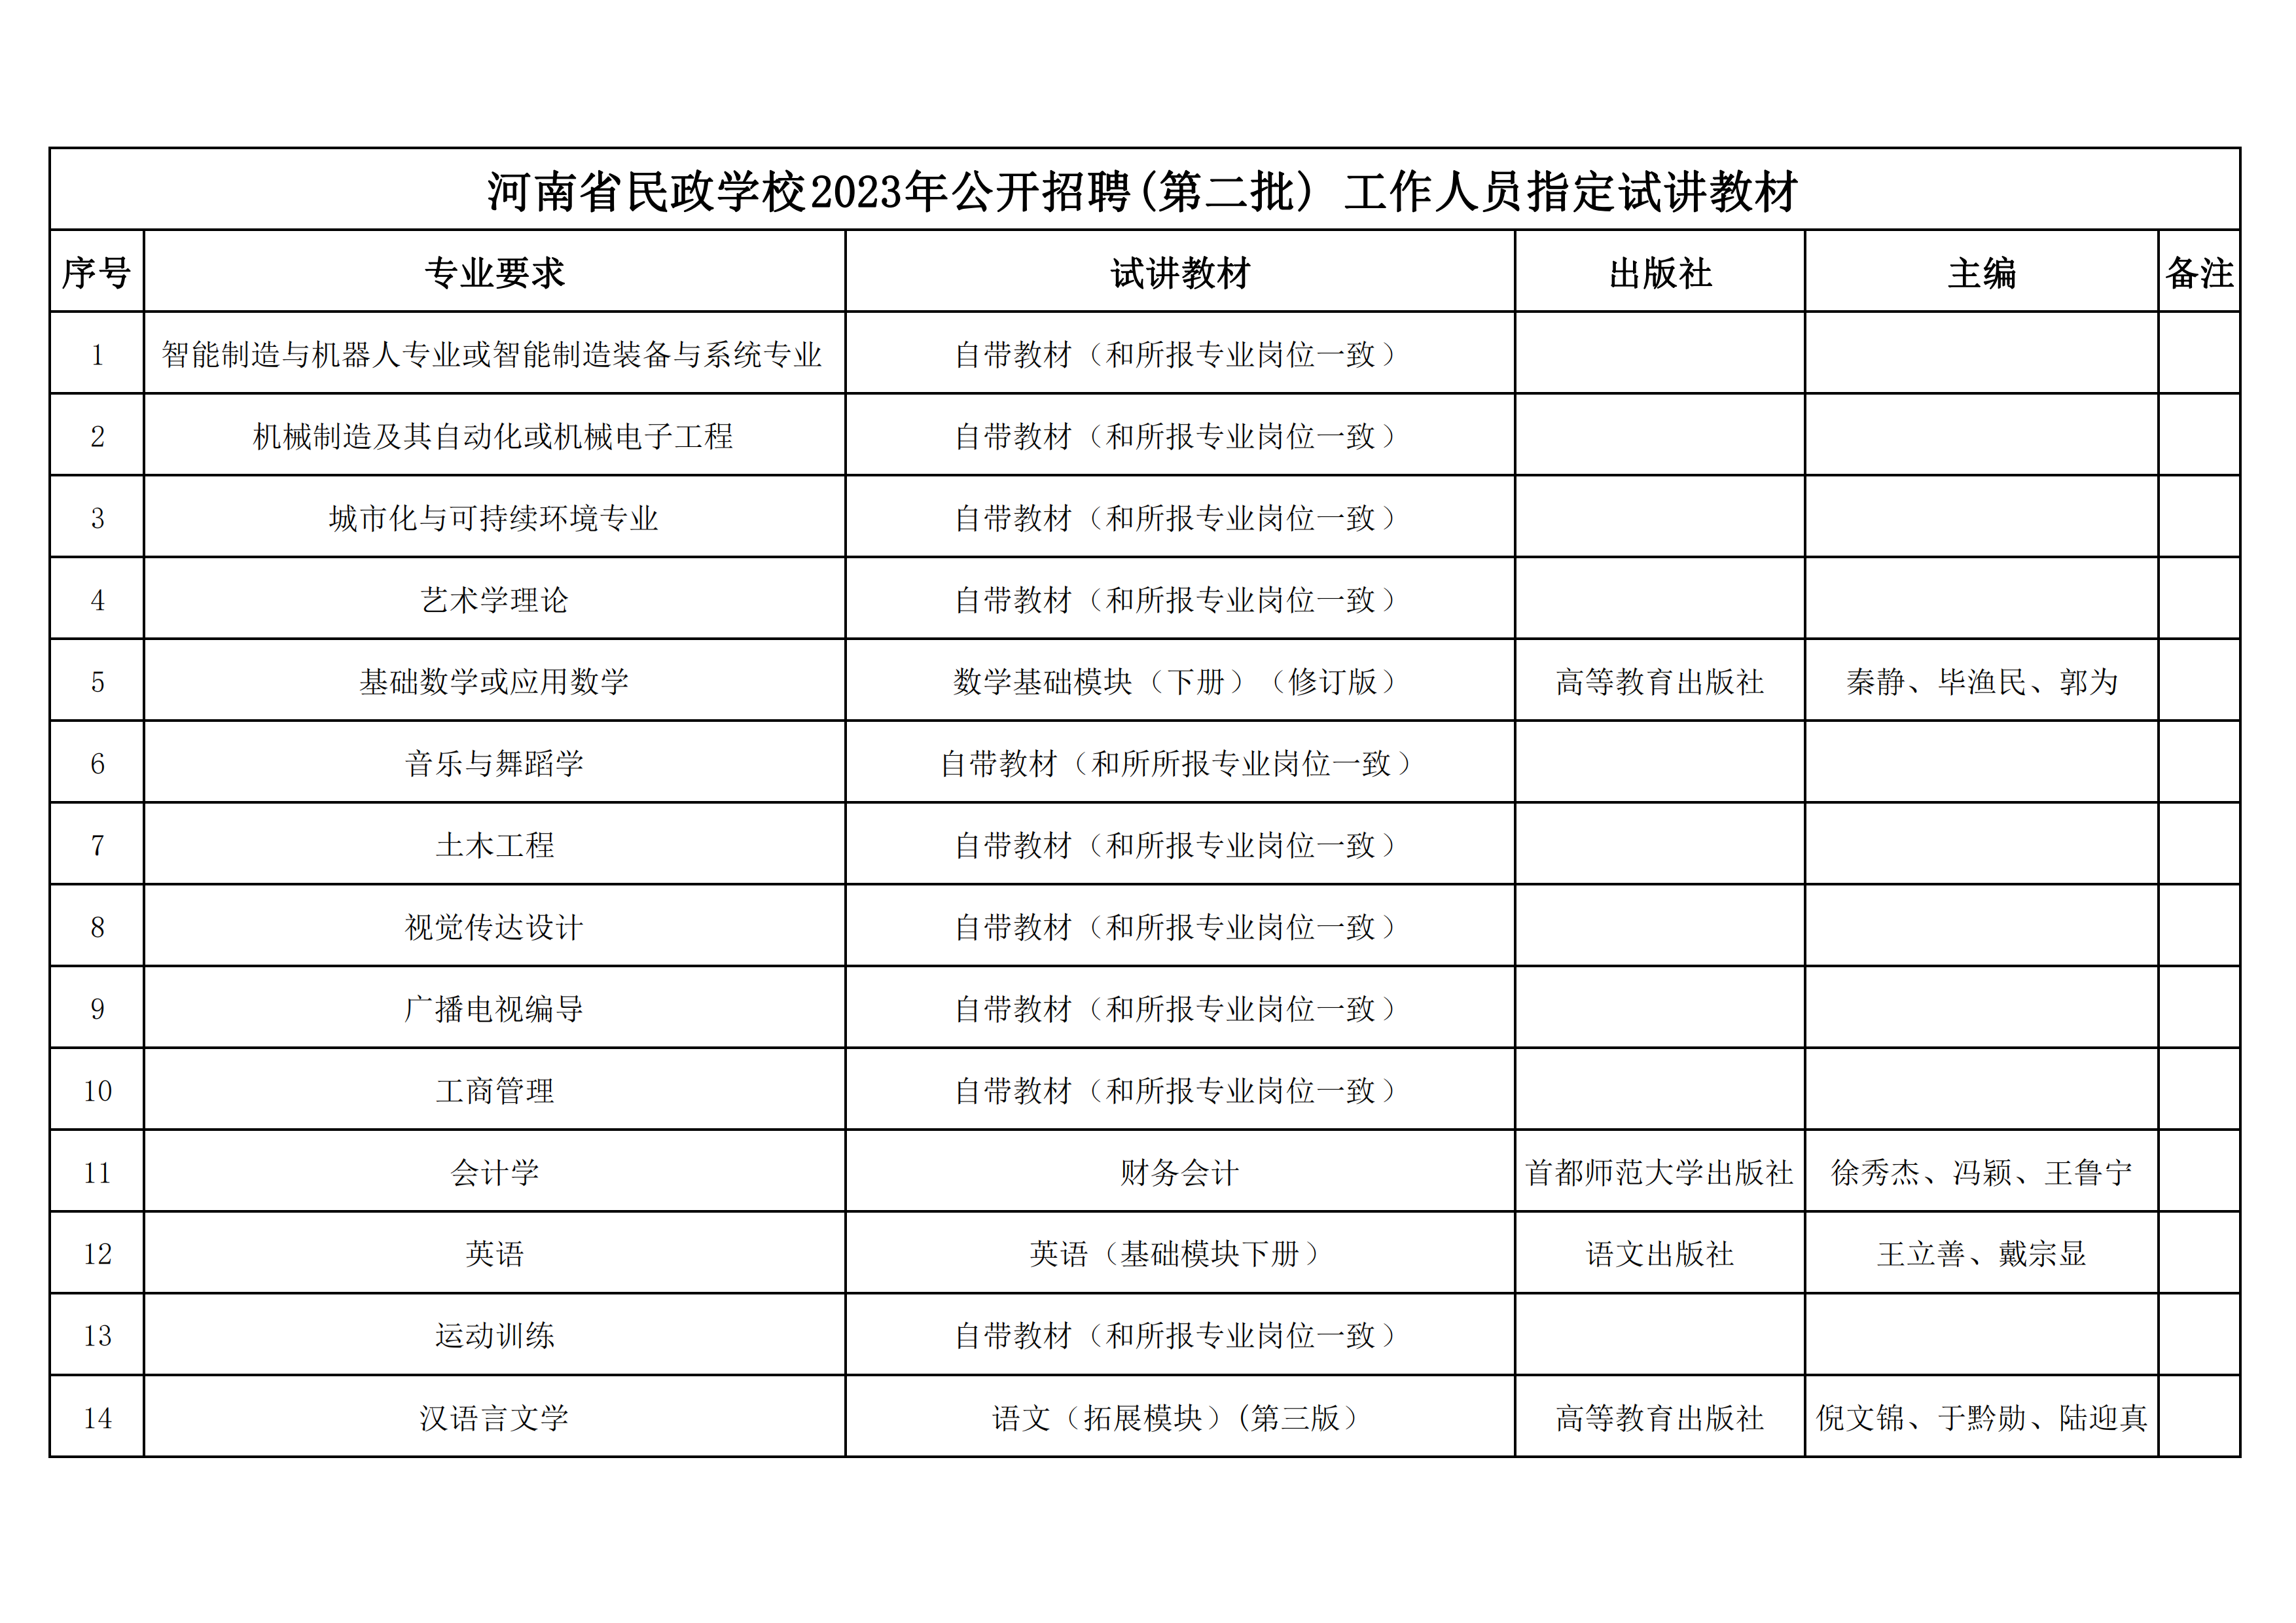 河南省民政学校2023年公开招聘(第二批) 工作人员指定试讲教材(定）(1)_00.png